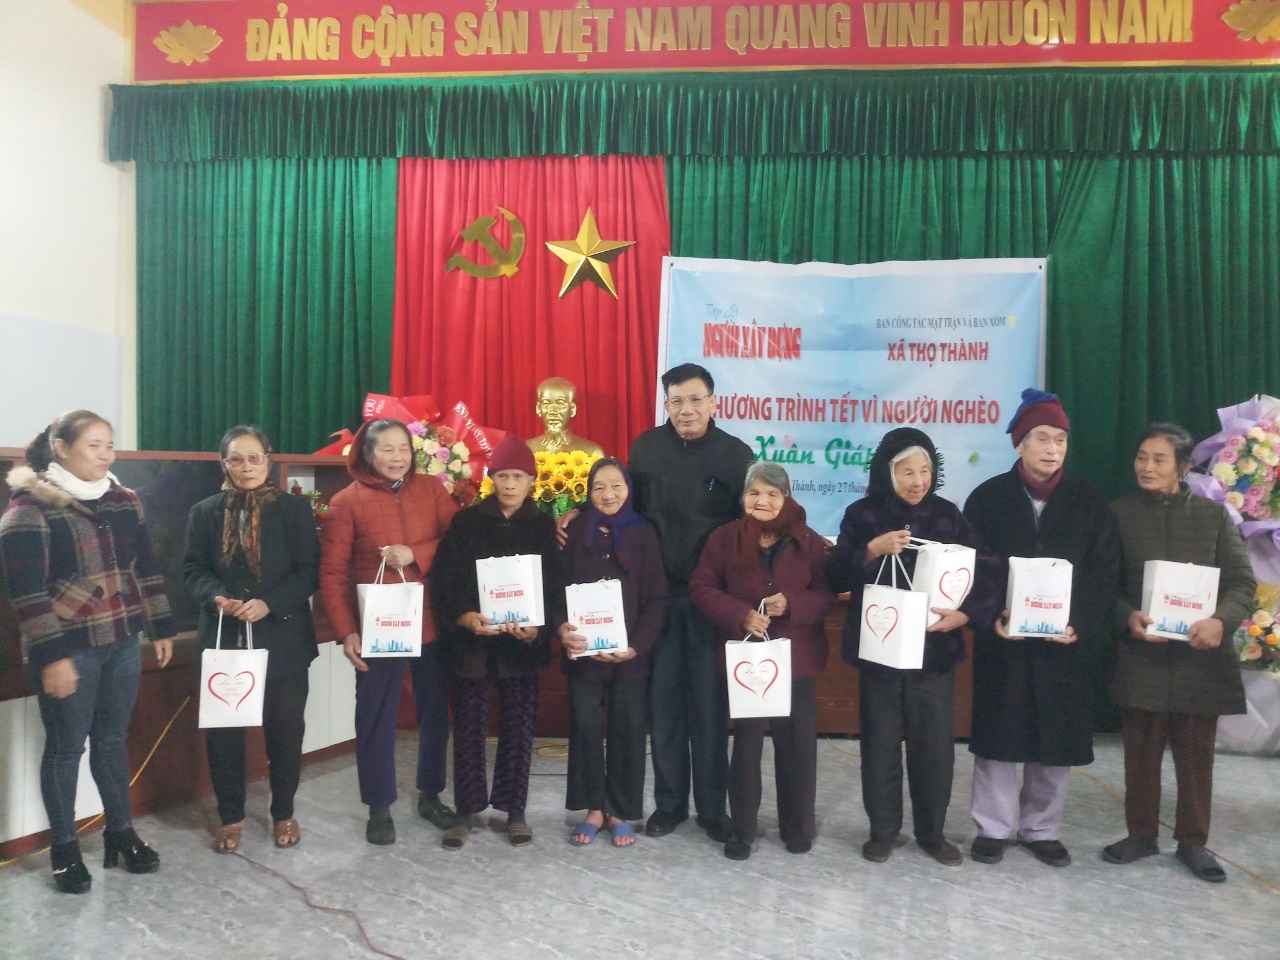 Tạp chí Người Xây dựng phối hợp trao quà Tết cho người nghèo tại Nghệ An